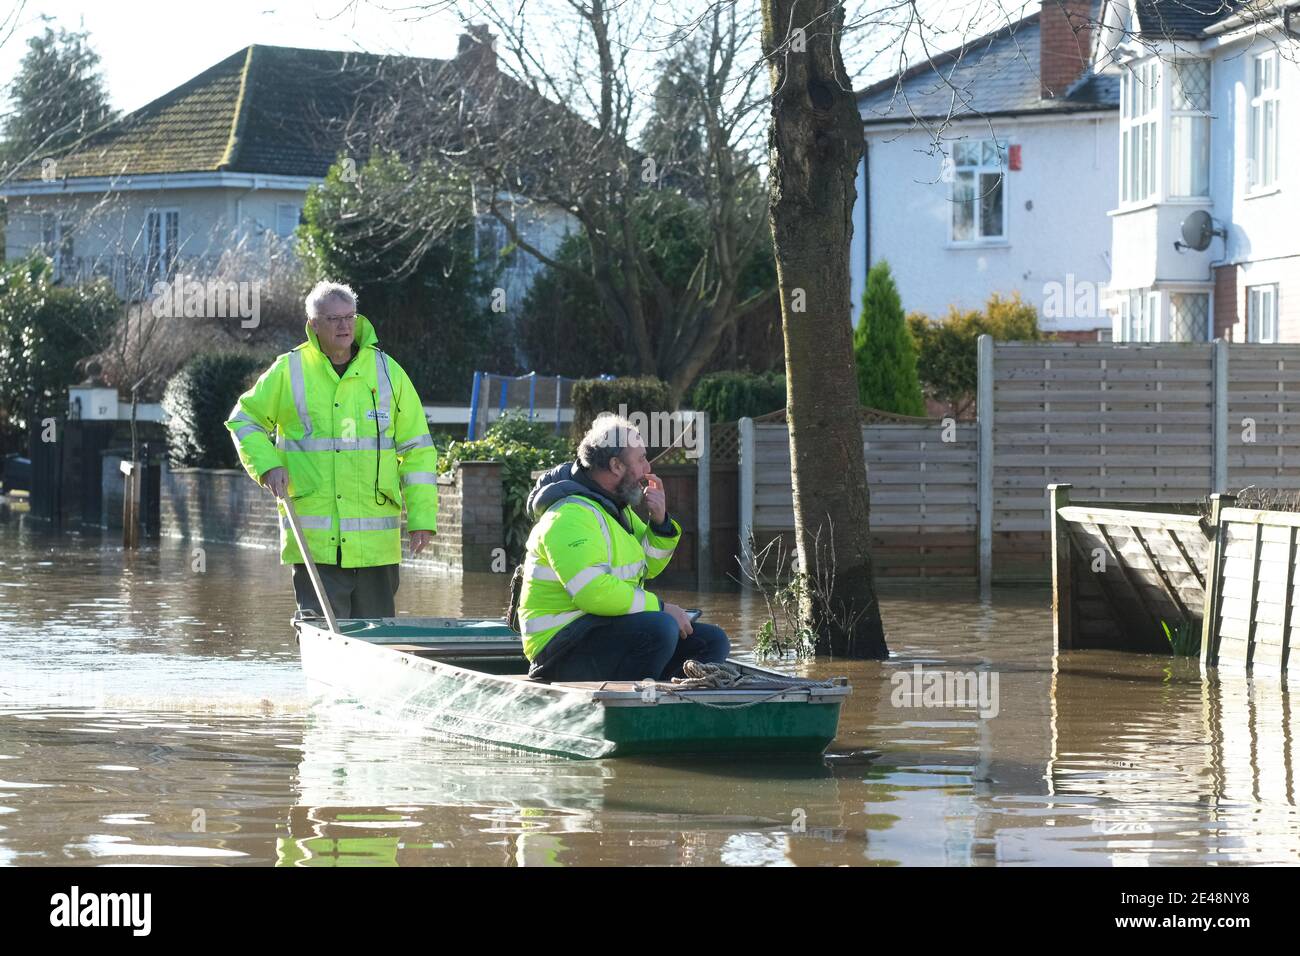 Hereford, Herefordshire Reino Unido - Viernes 22 de enero de 2021 - el alcaide local de las inundaciones Colin Taylor ayuda a un miembro del personal de la Agencia del Medio Ambiente (en barco) a evaluar los daños causados por las inundaciones en el área de Grayfriars inundada de la ciudad por las inundaciones del río Wye. Los niveles de los ríos han comenzado a bajar, pero los residentes aquí enfrentan muchos meses de agitación para reconstruir una vez más después de las inundaciones anteriores en febrero de 2020 y octubre de 2019. Foto Steven May / Alamy Live News Foto de stock